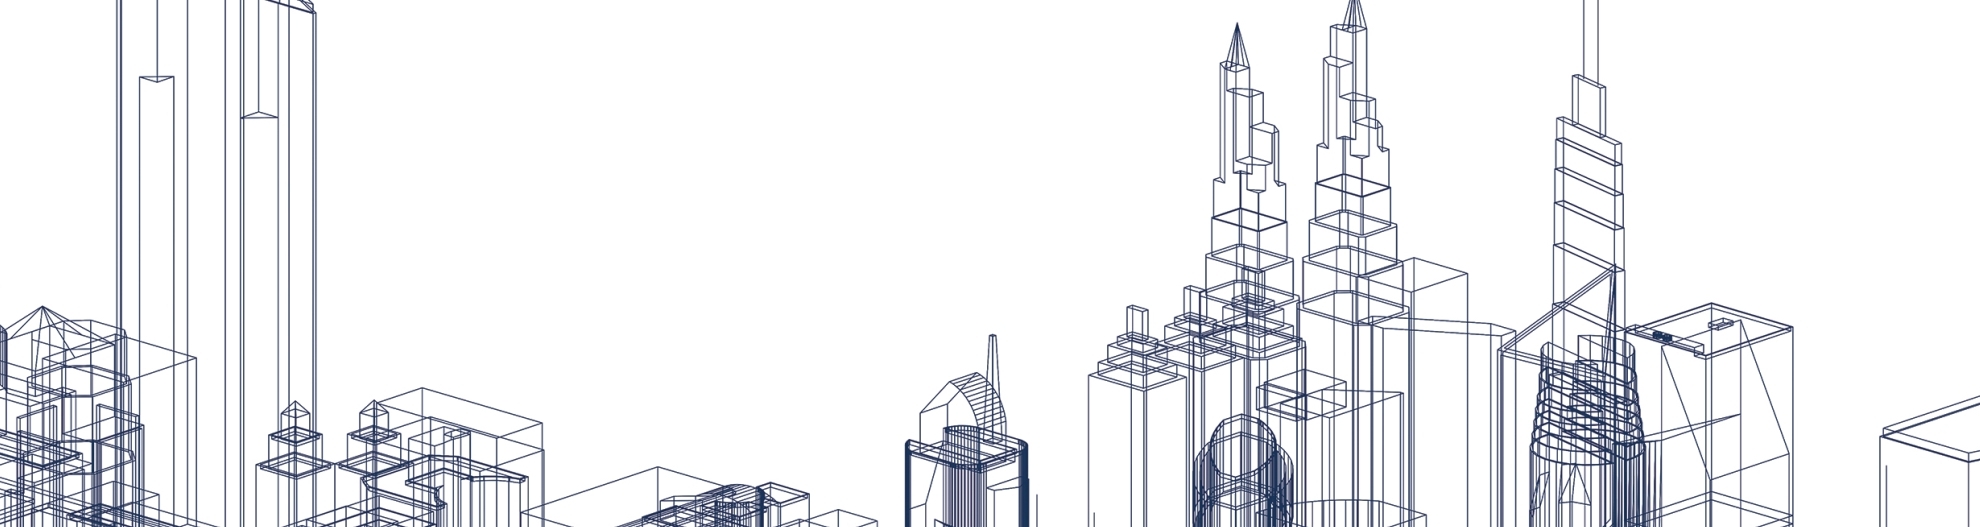 Sketch of skyscrapers